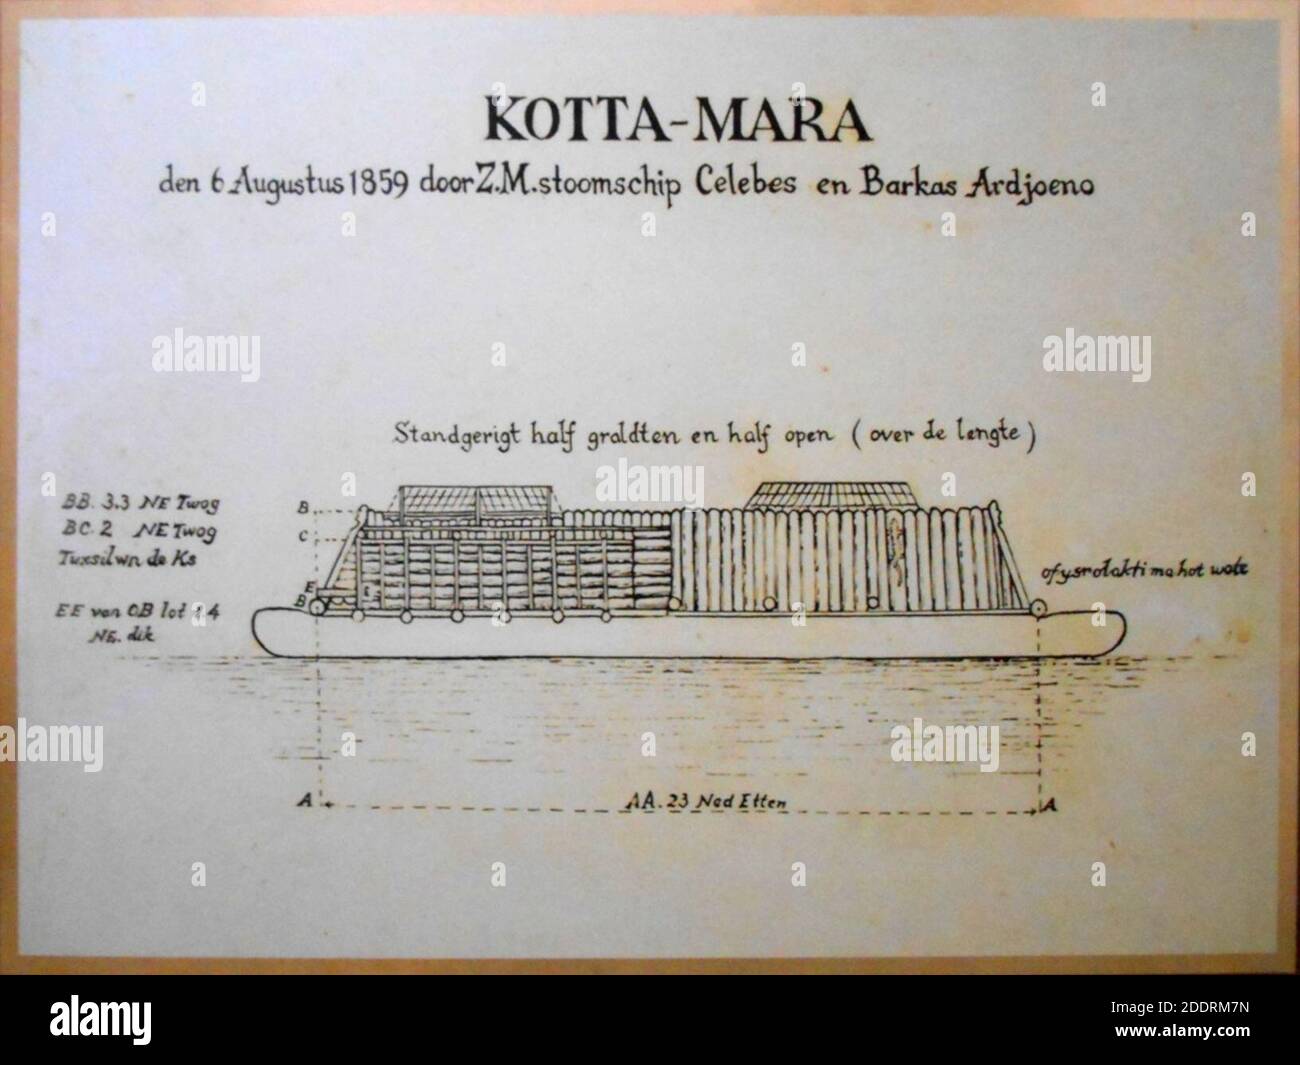 KOTTA-MARA den 6 Augustus 1859 door Z.M. stoomschip Celebes en Barkas Ardjoeno. Stock Photo